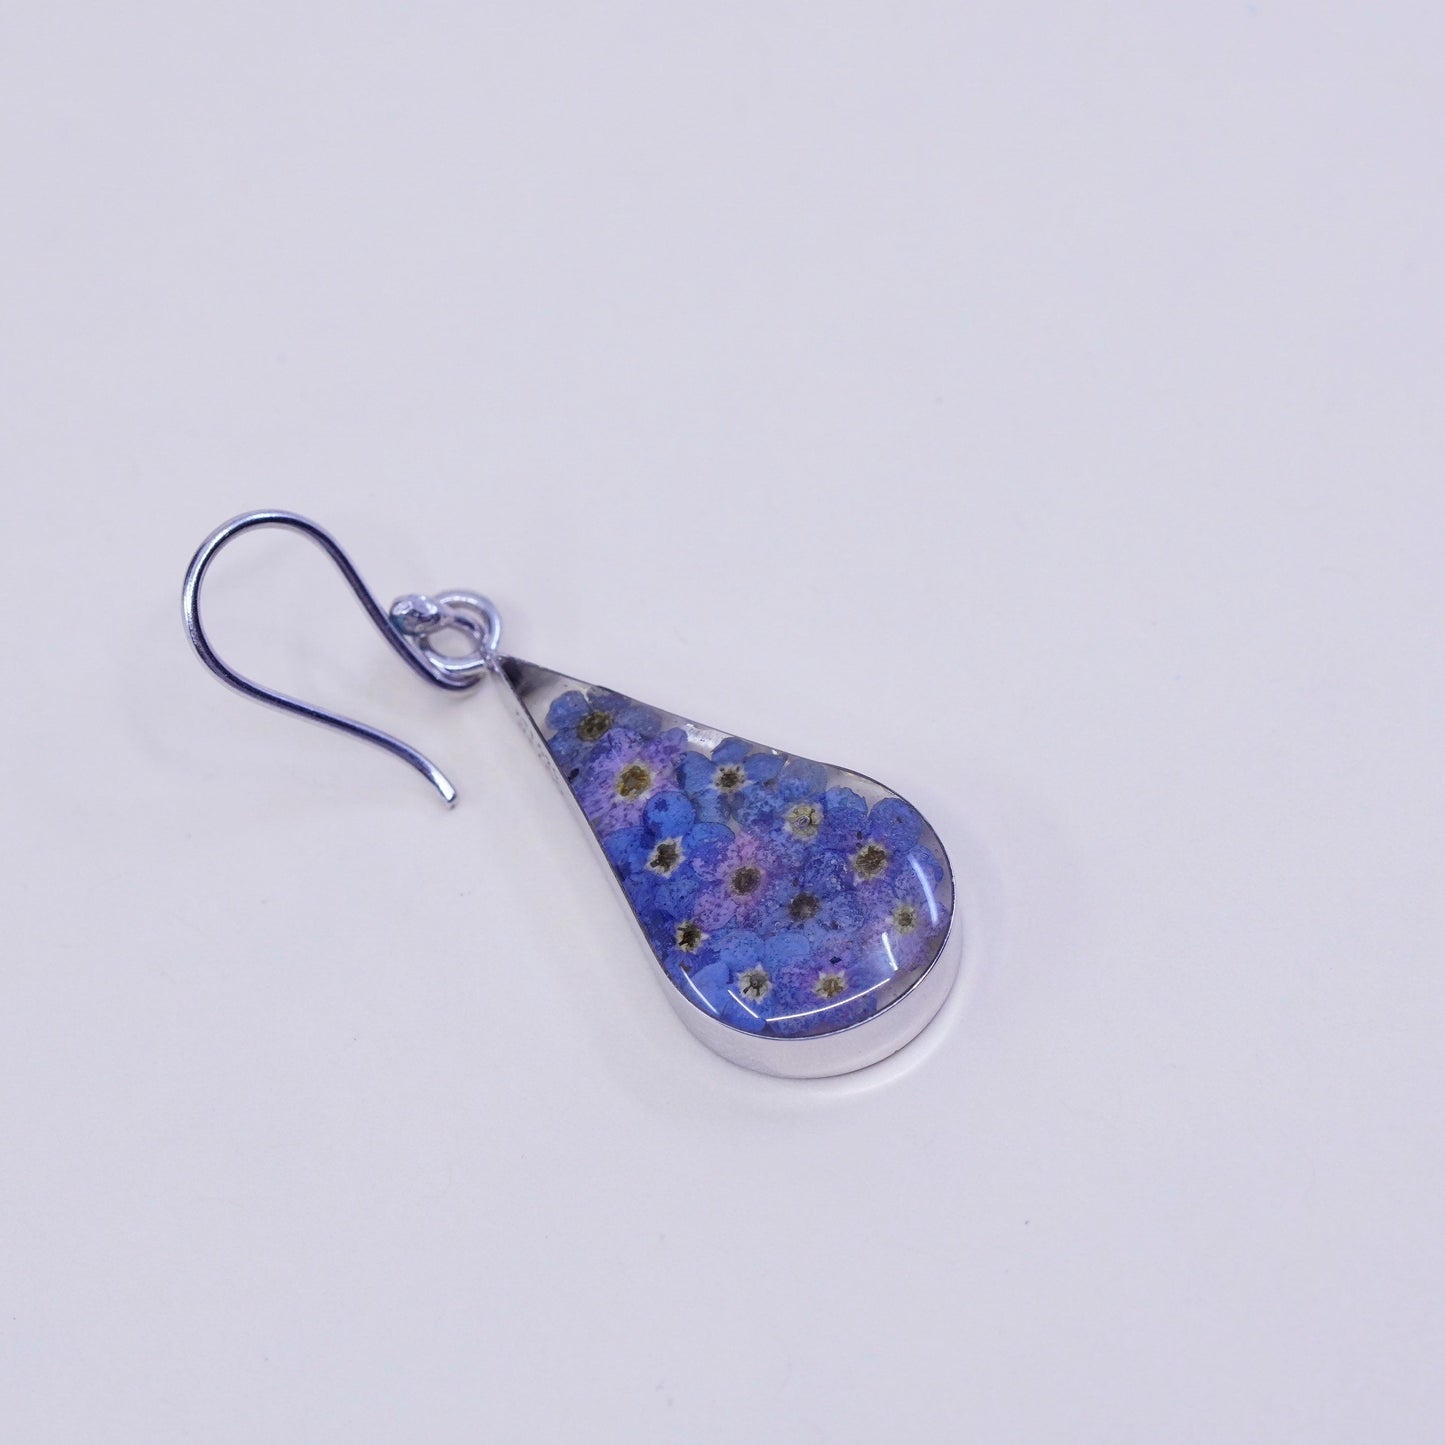 vtg Mexico sterling silver handmade earrings, 925 teardrop purple flower resin